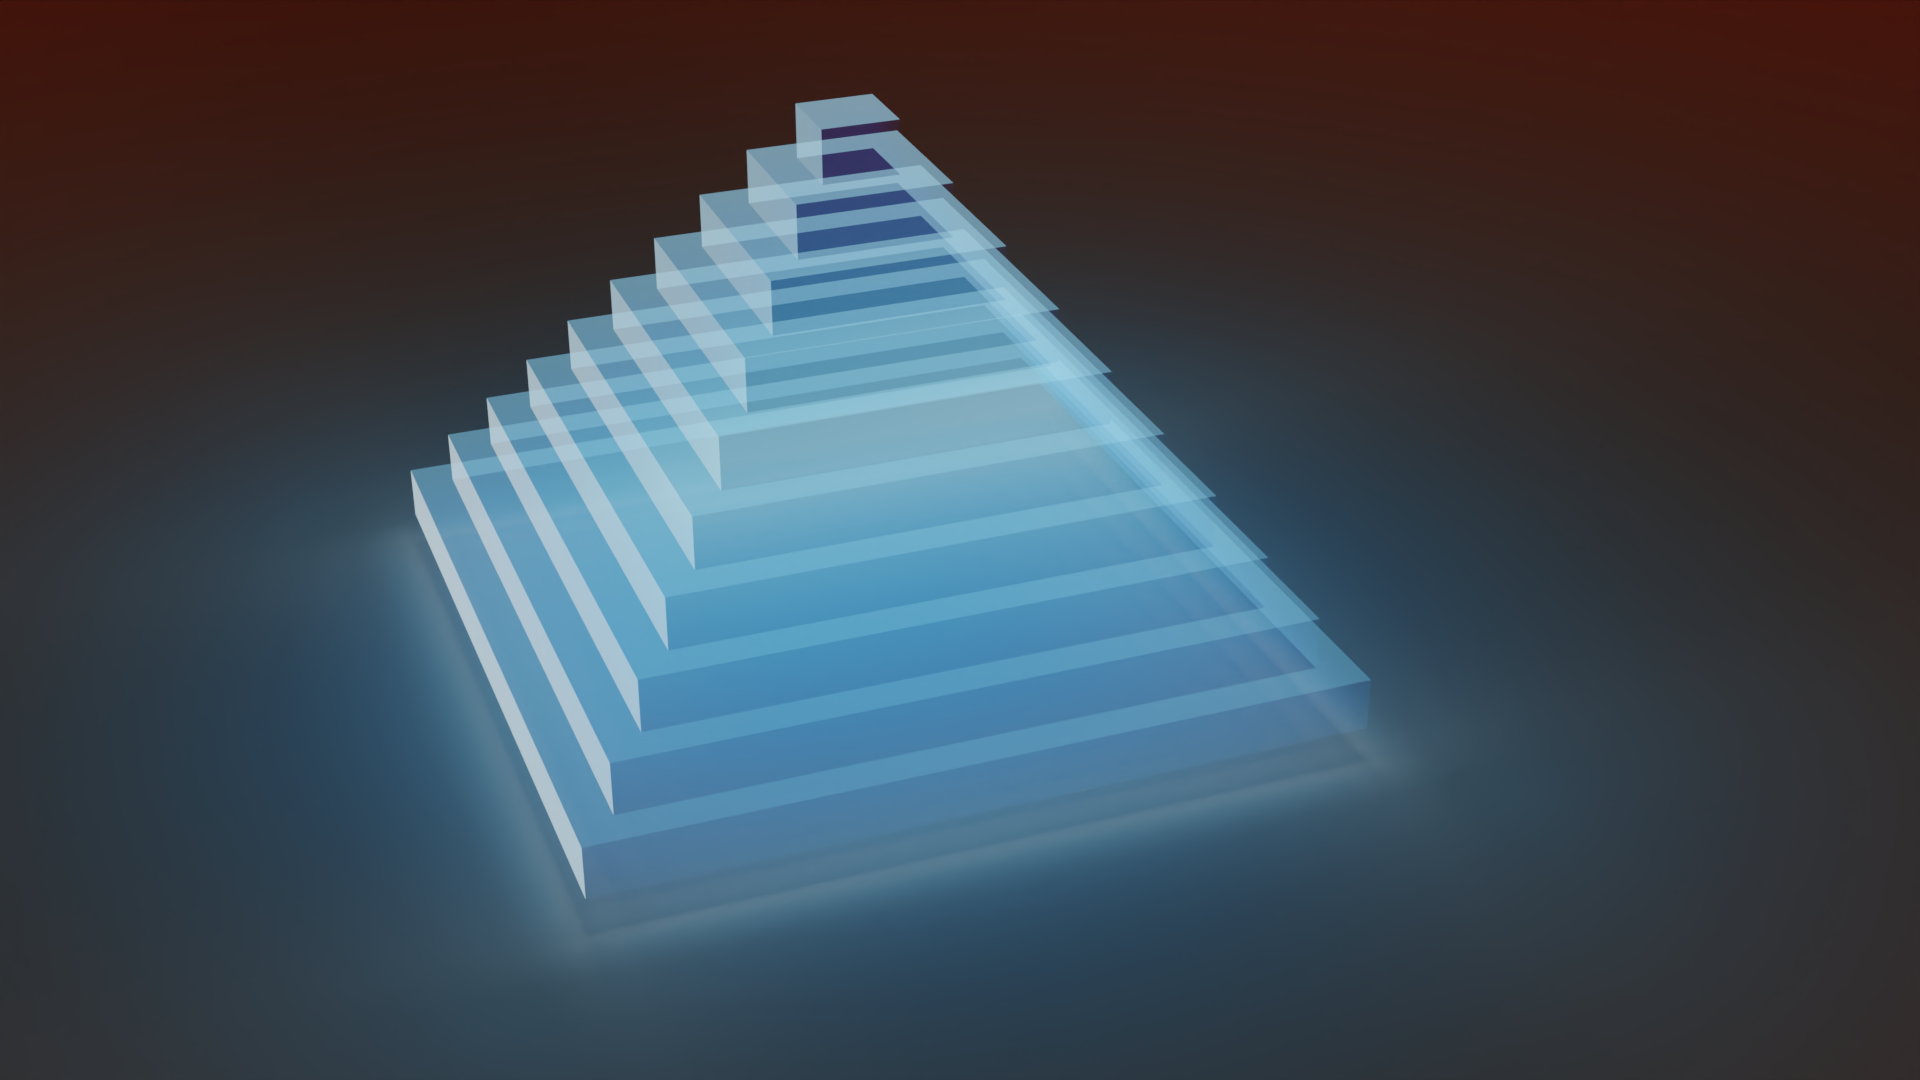 General 1920x1080 pyramid CGI digital art simple background